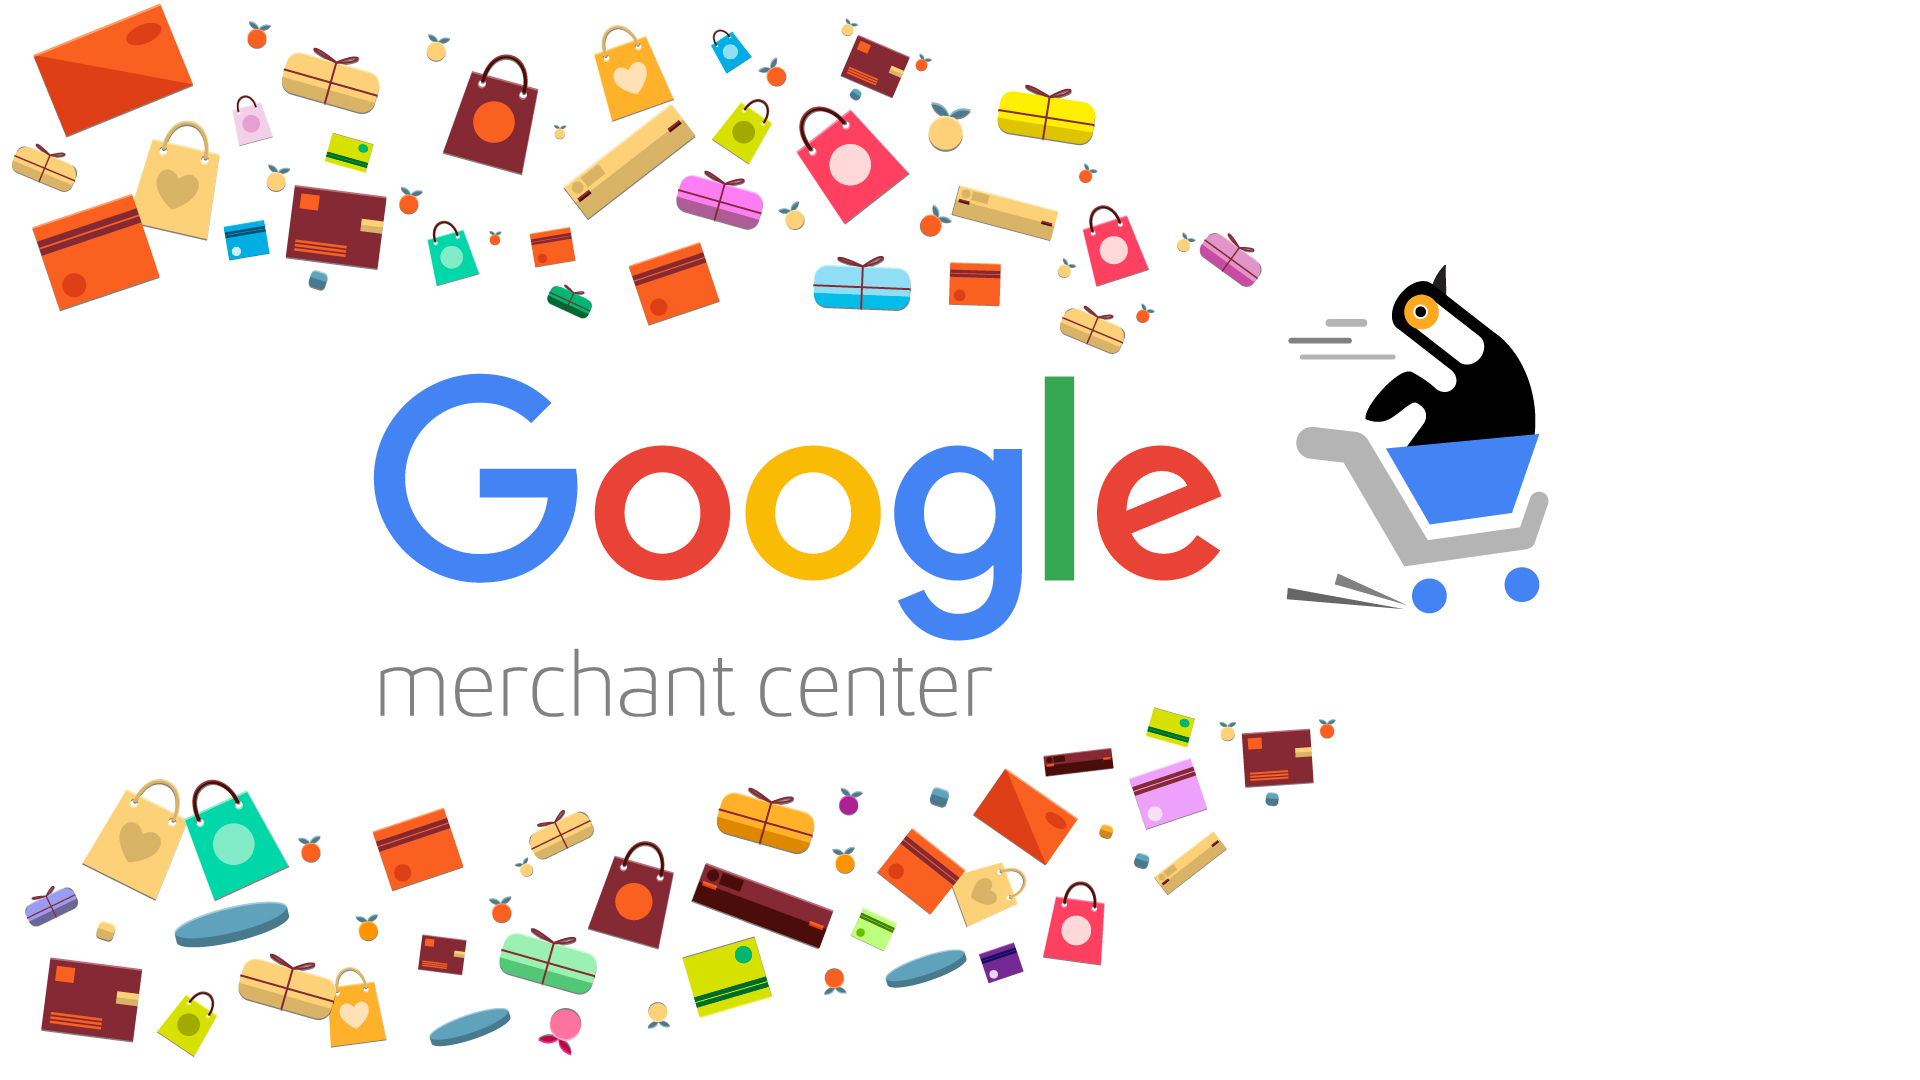 Гугл товары - рекламы Google Shopping (Merchant )